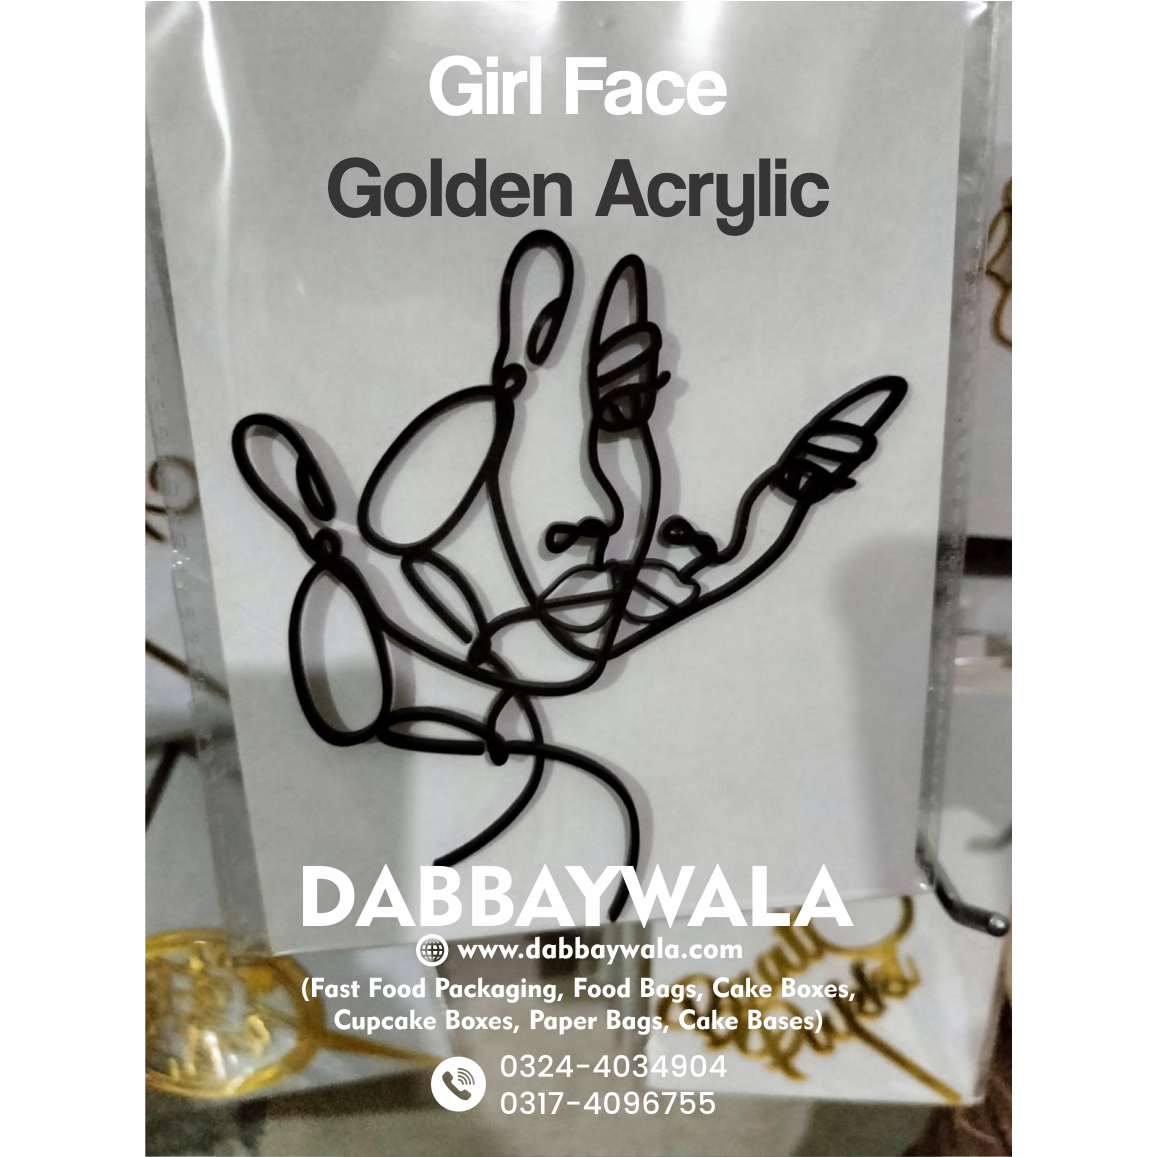 Golden Acrylic Girl Face 2 Cake Topper